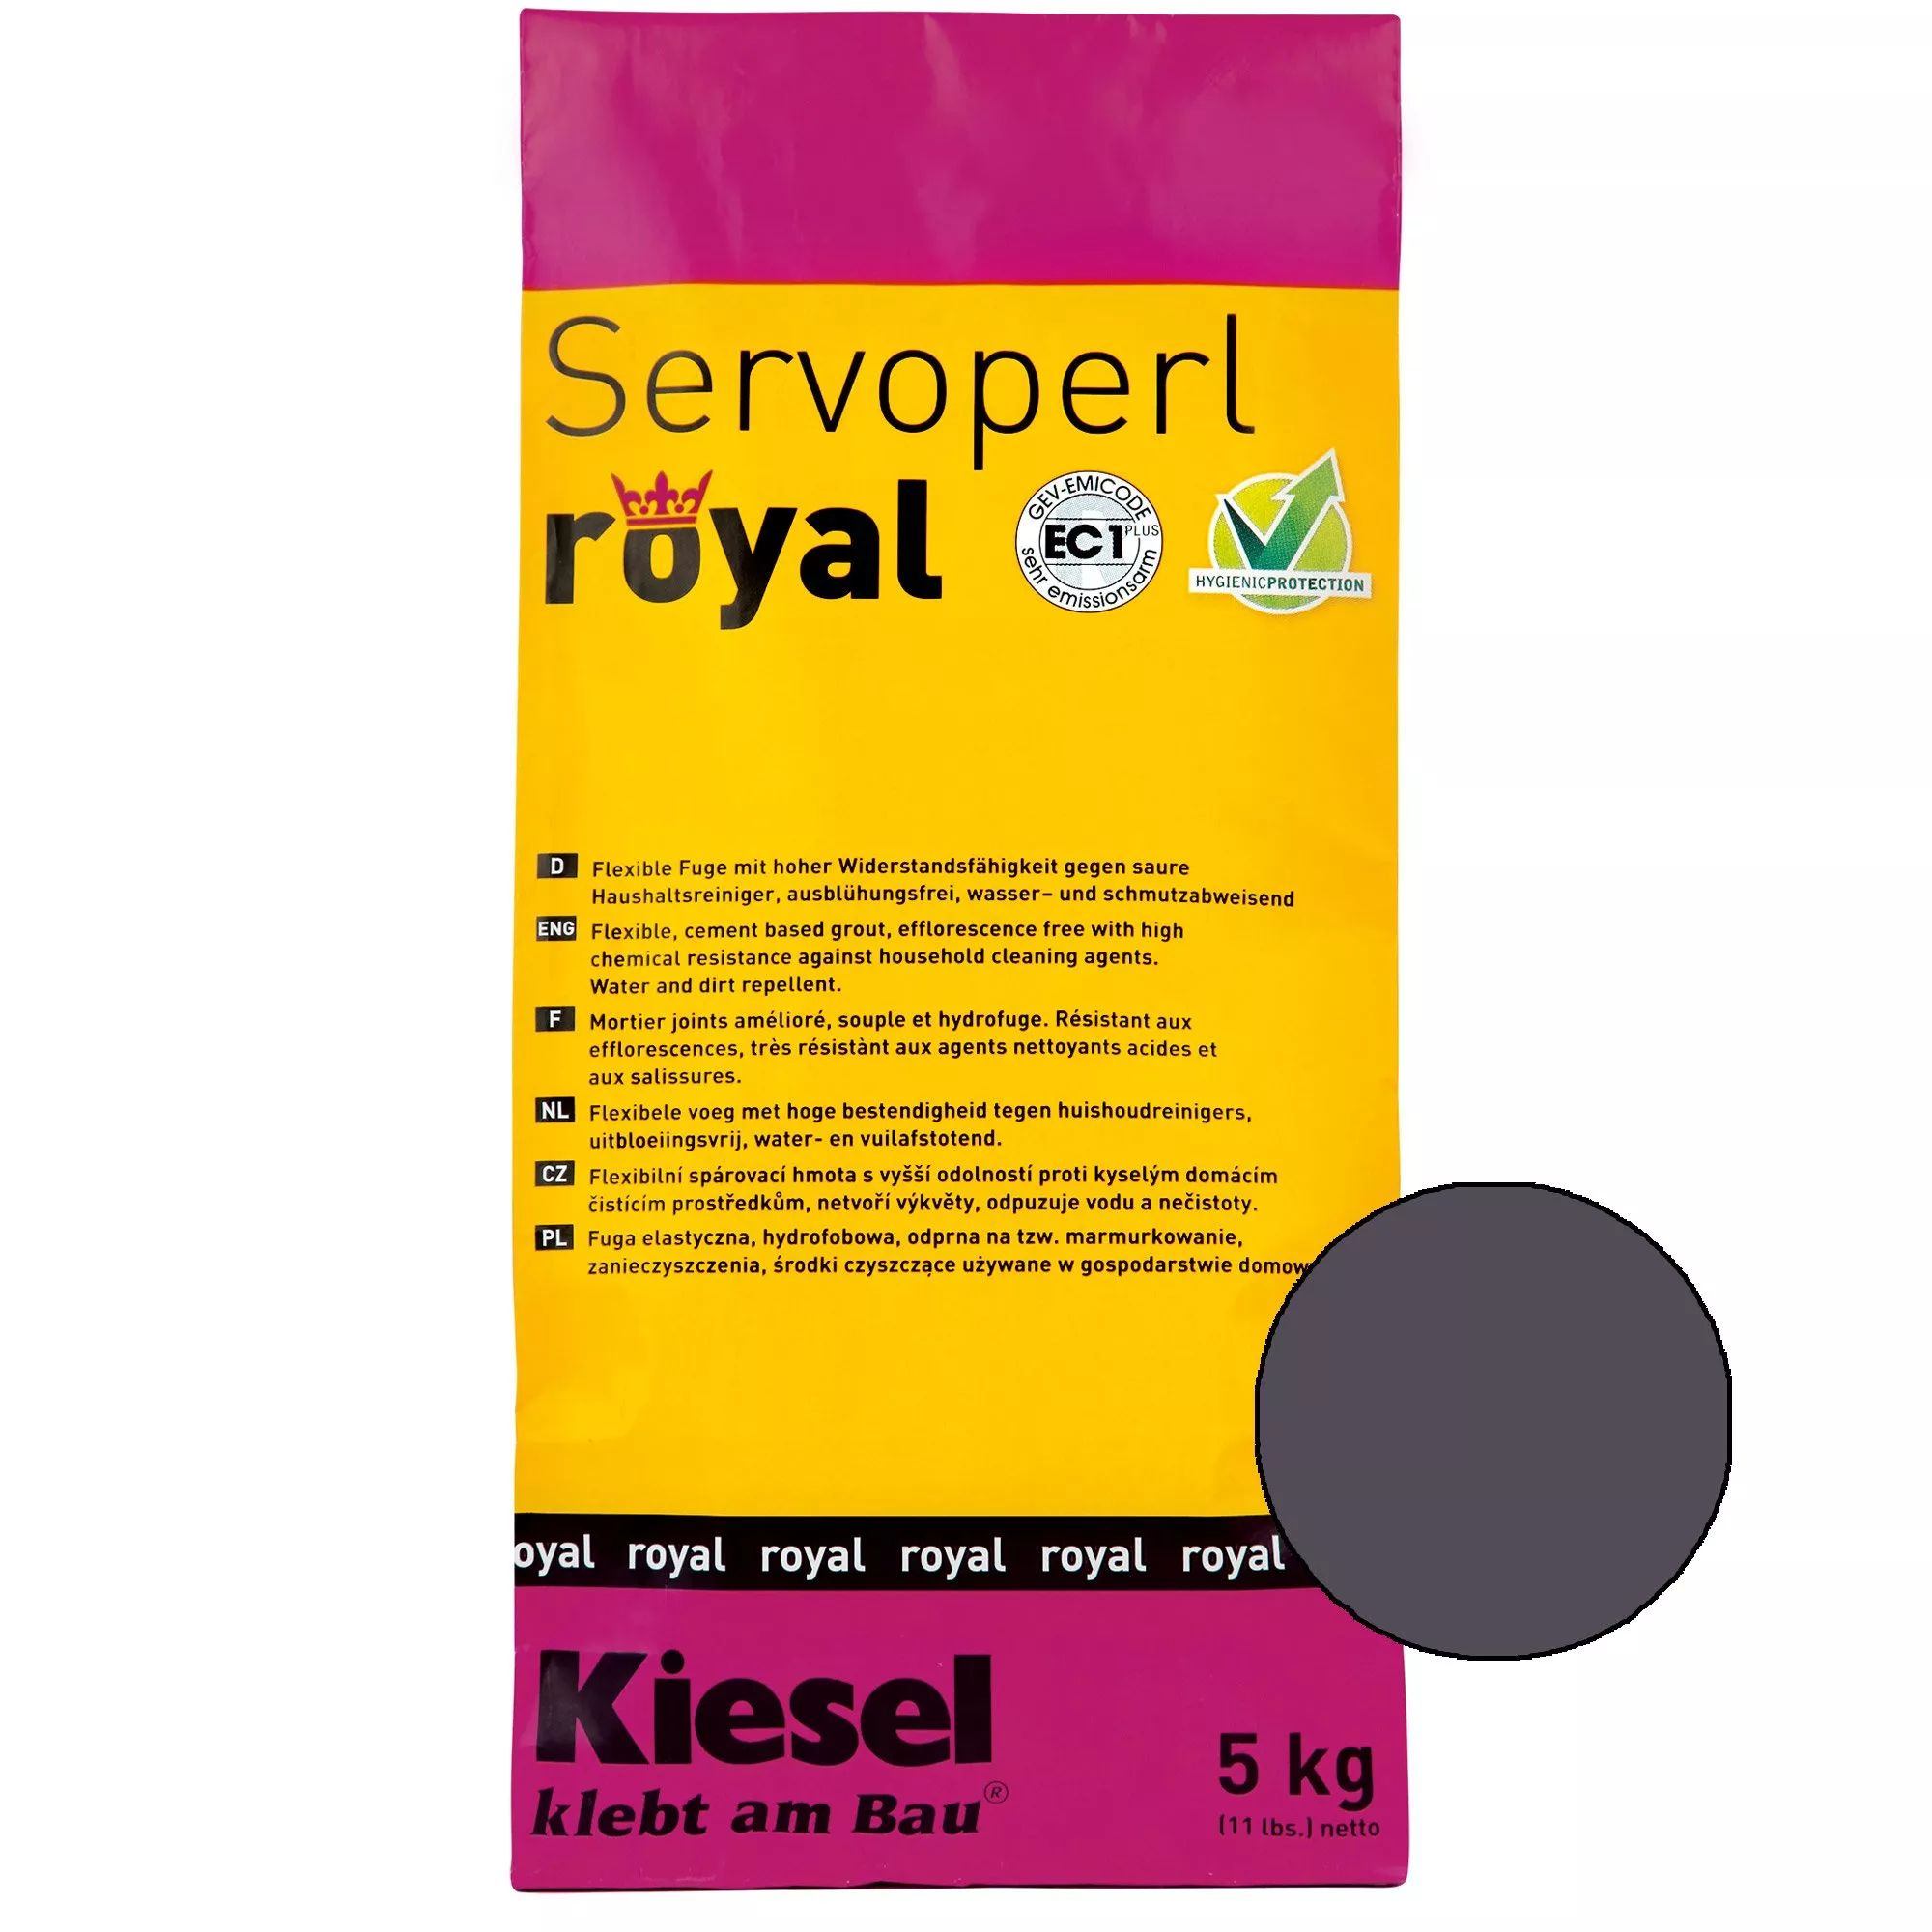 Kiesel Servoperl royal - Flexible, wasser- und schmutzabweisende Fuge (5KG Shadow)